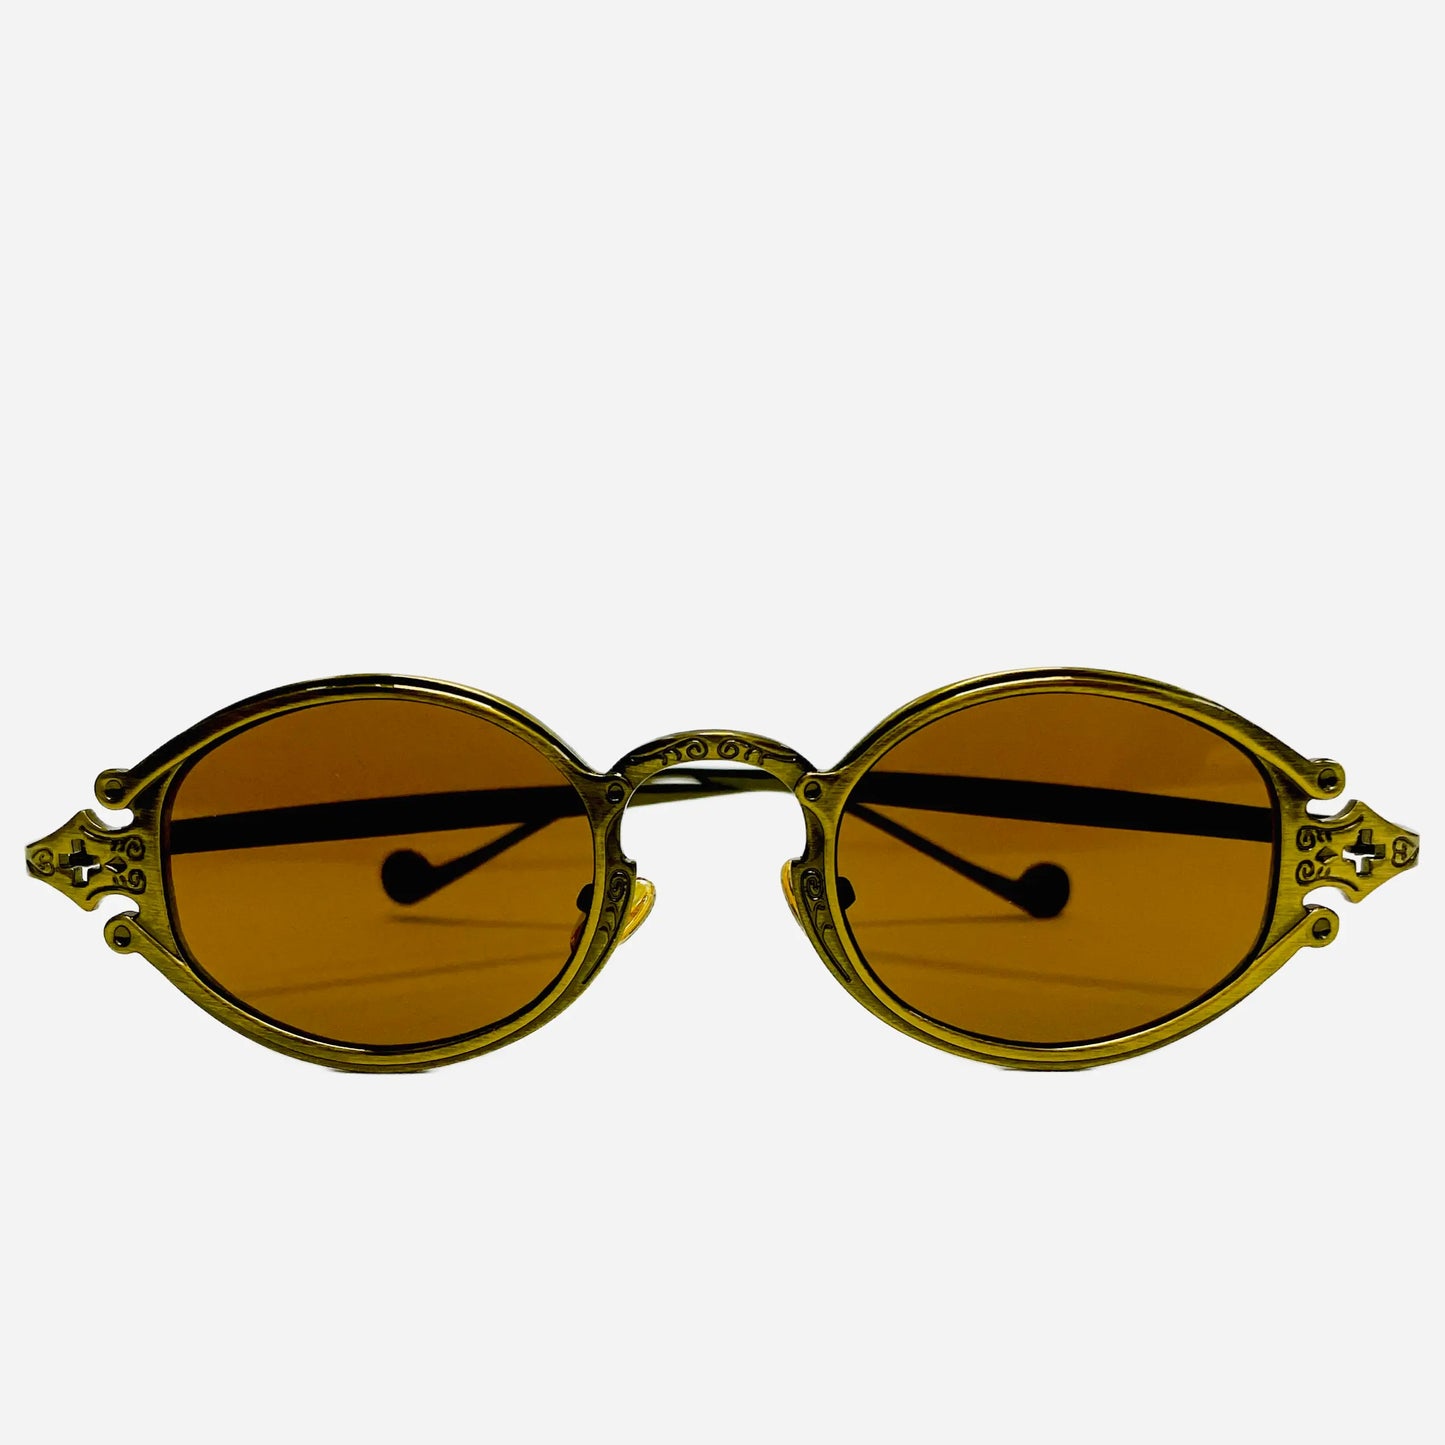 Vintage-Jean-Paul-Gaultier-Sonnenbrille-Sunglasses-Model-56-0001-bronze